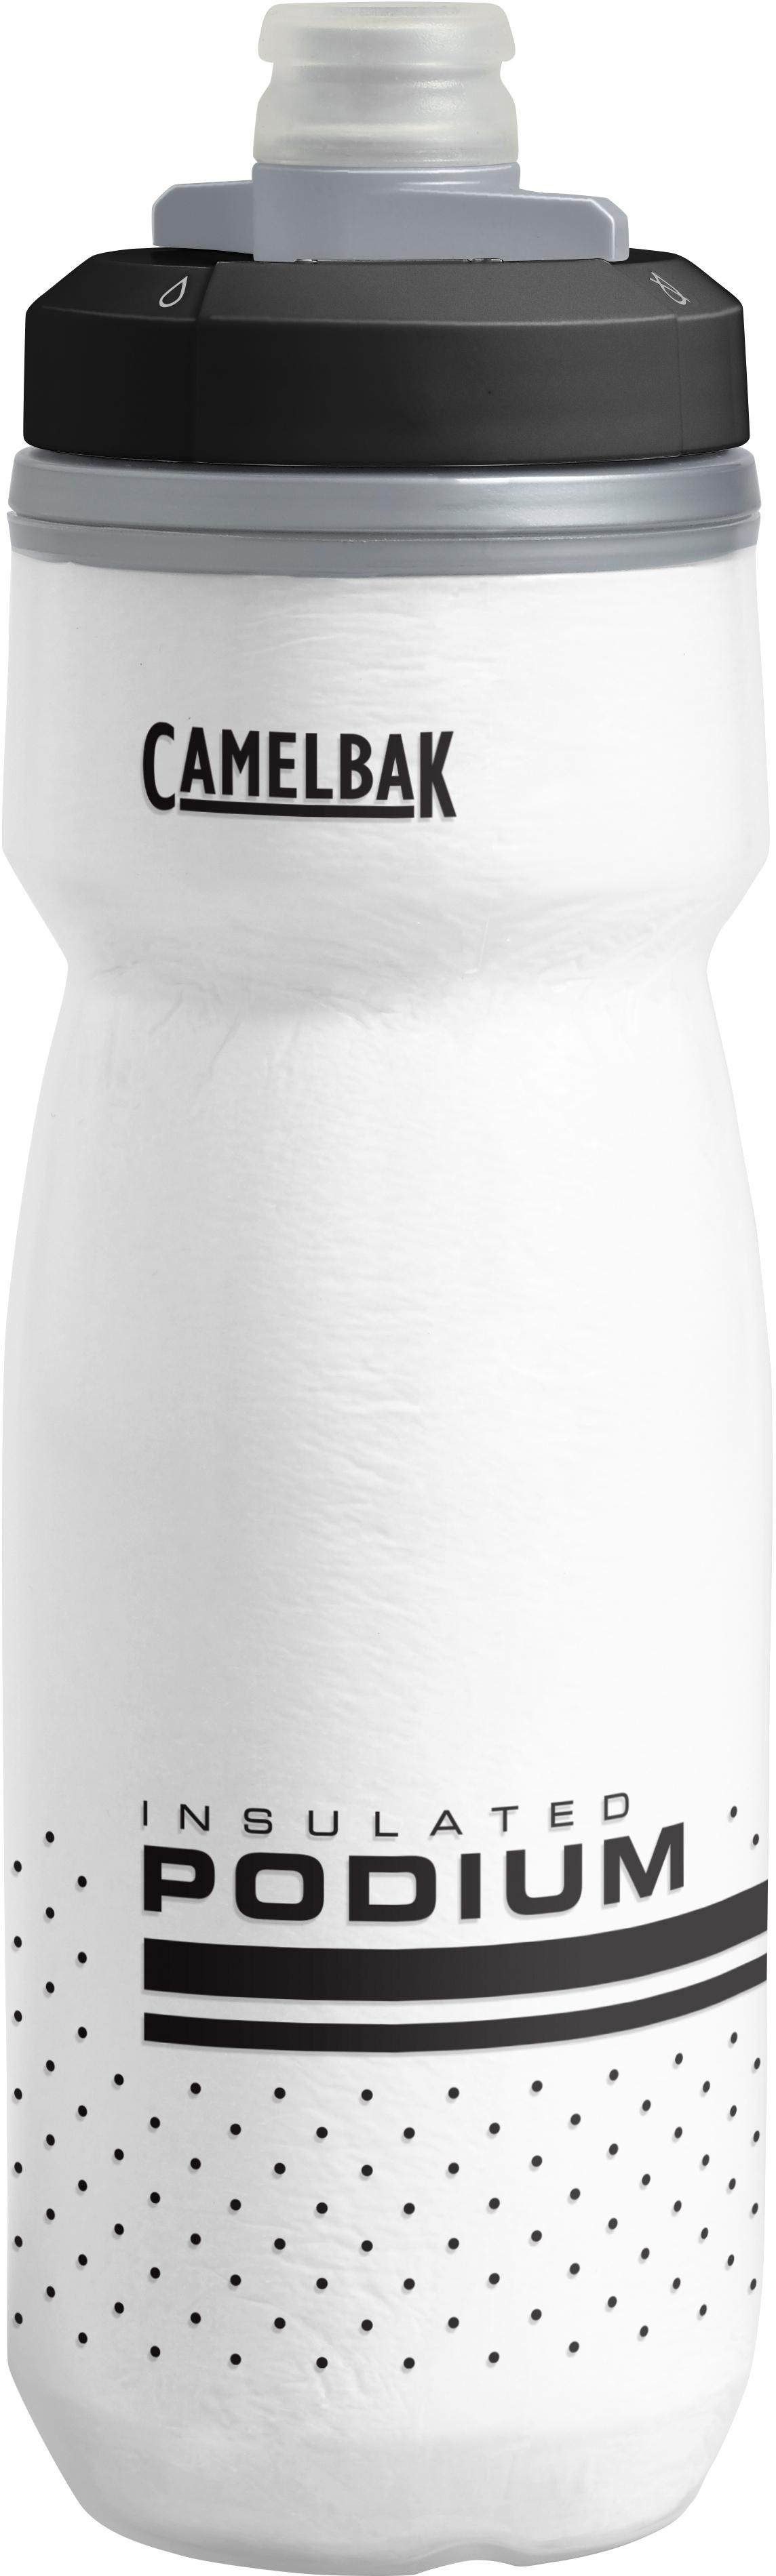 Camelbak Podium Chill Water Bottle, 620Ml, White/Black